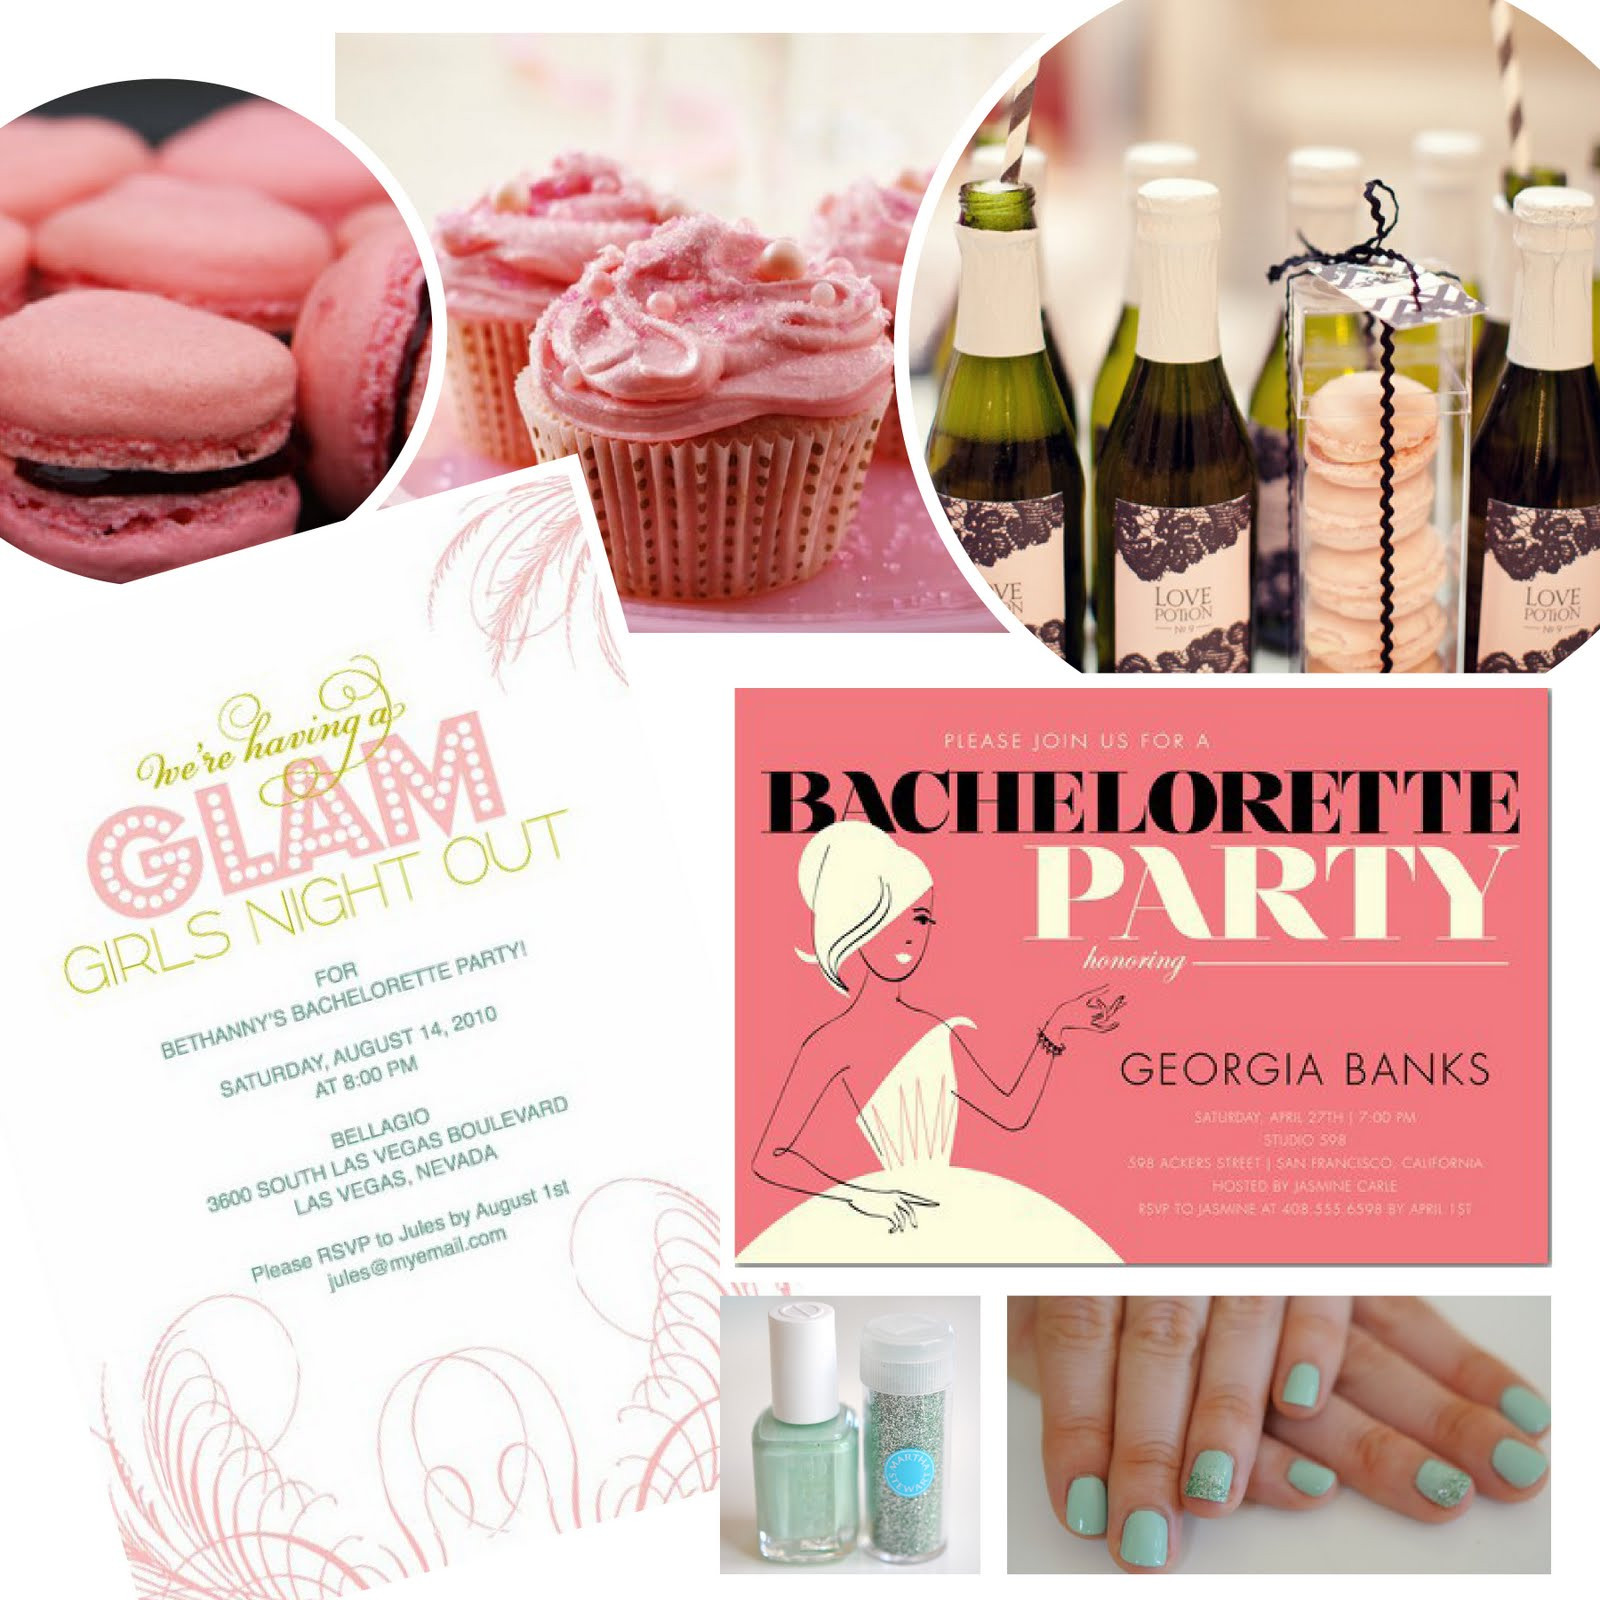 Bachelorette Bachelor Party Ideas
 Bachelorette Party Themes That Take the Cake Name Change